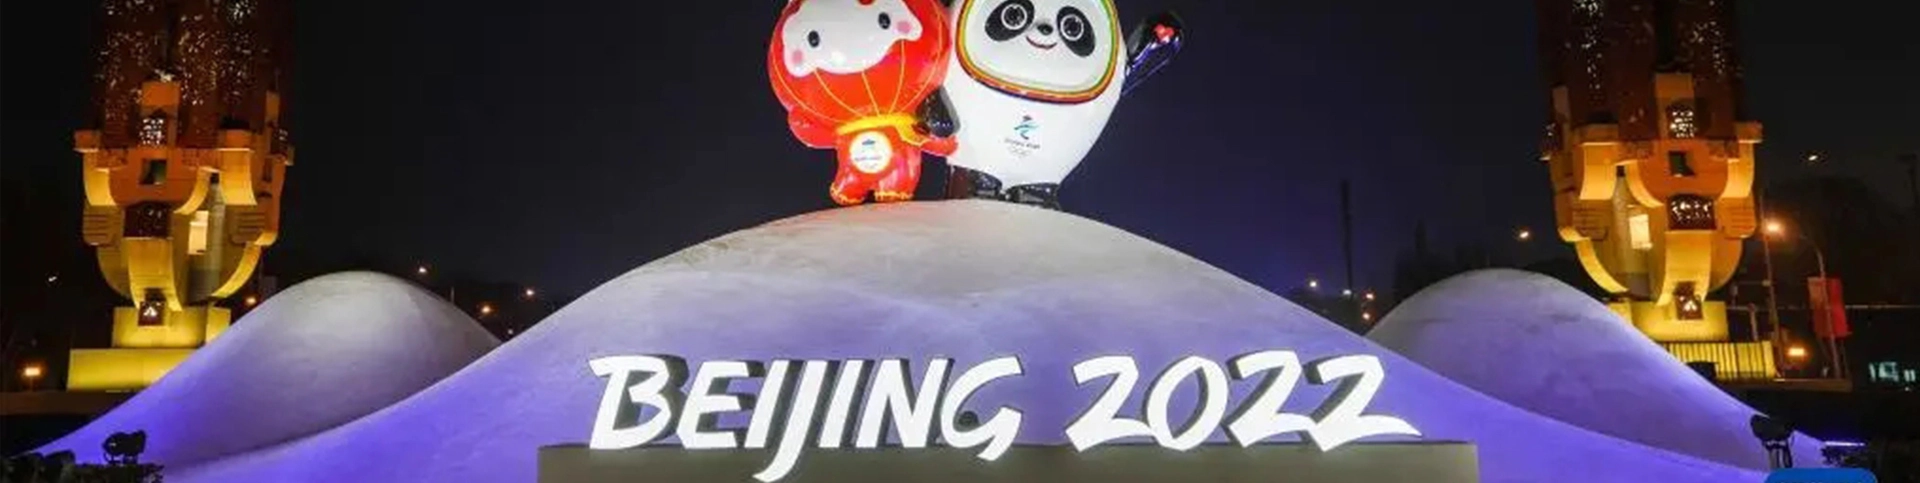 Hệ thống hội nghị tốt nhất cho Thế vận hội mùa đông Olympic Bắc Kinh 2022